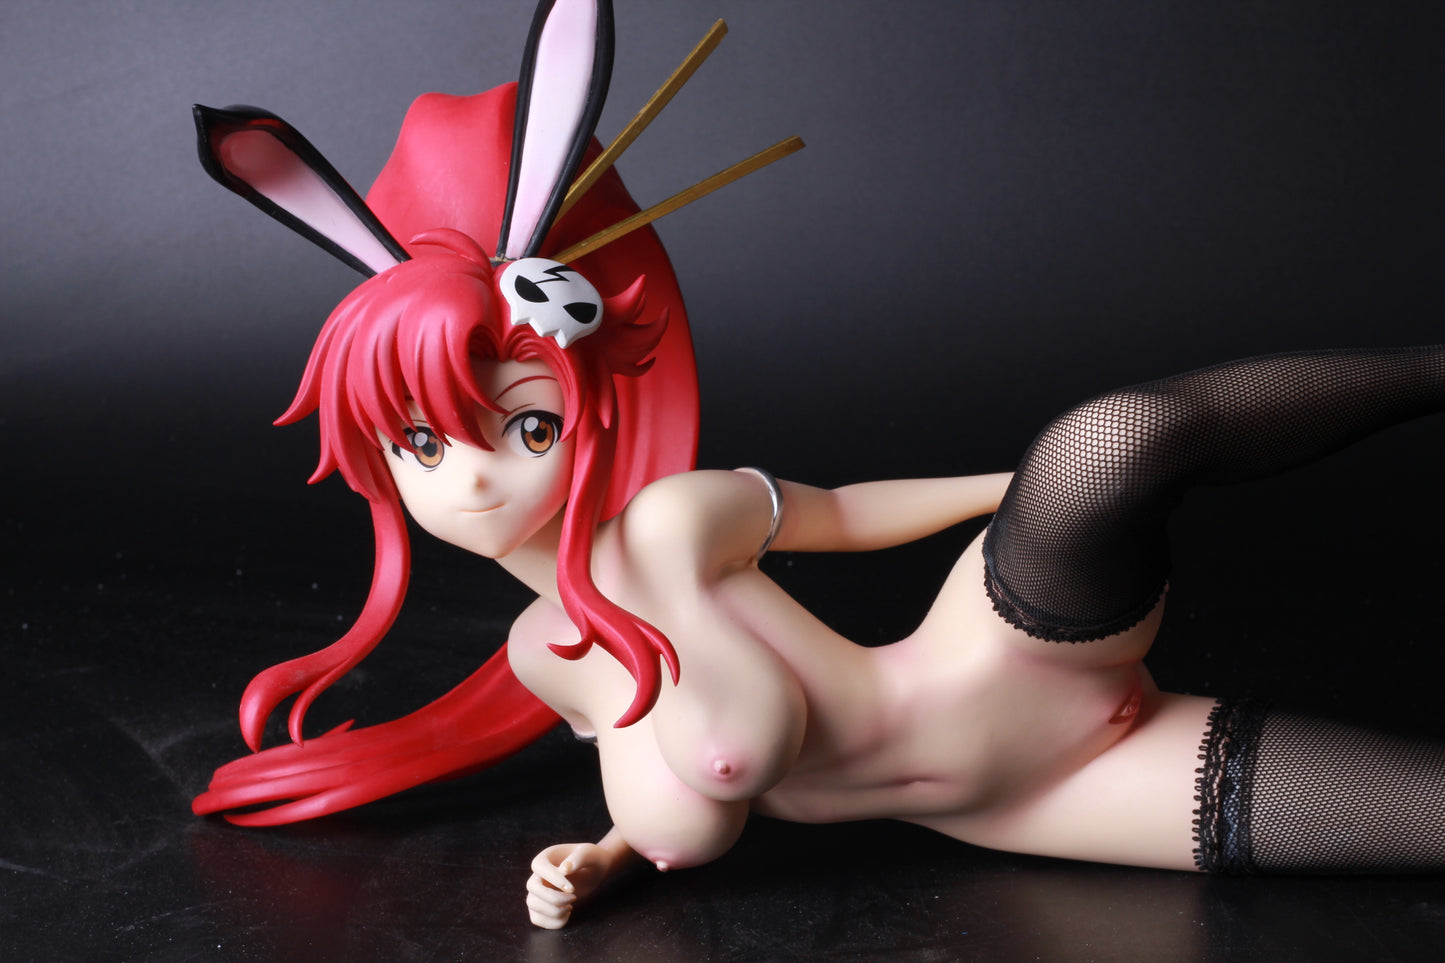 Tengen Toppa Gurren Lagann yoko 1/4 naked anime figures resin model figures